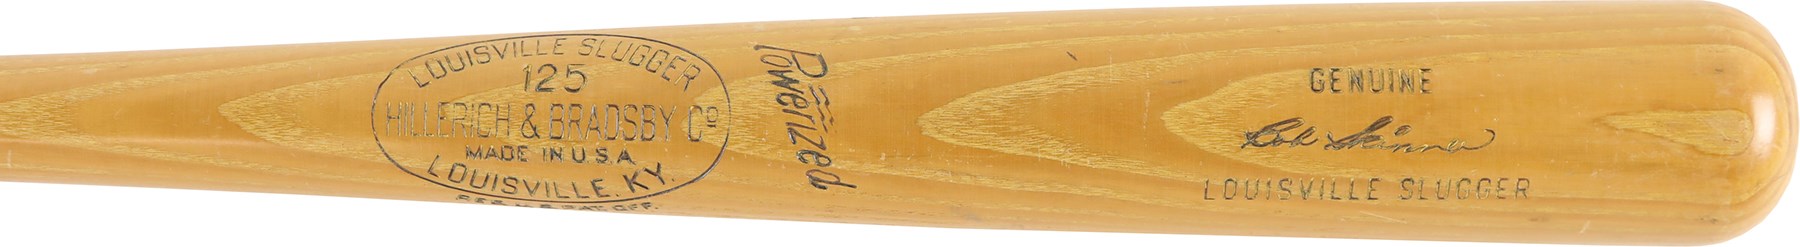 Baseball Equipment - 1950s Bob Skinner Pro-Model Bat